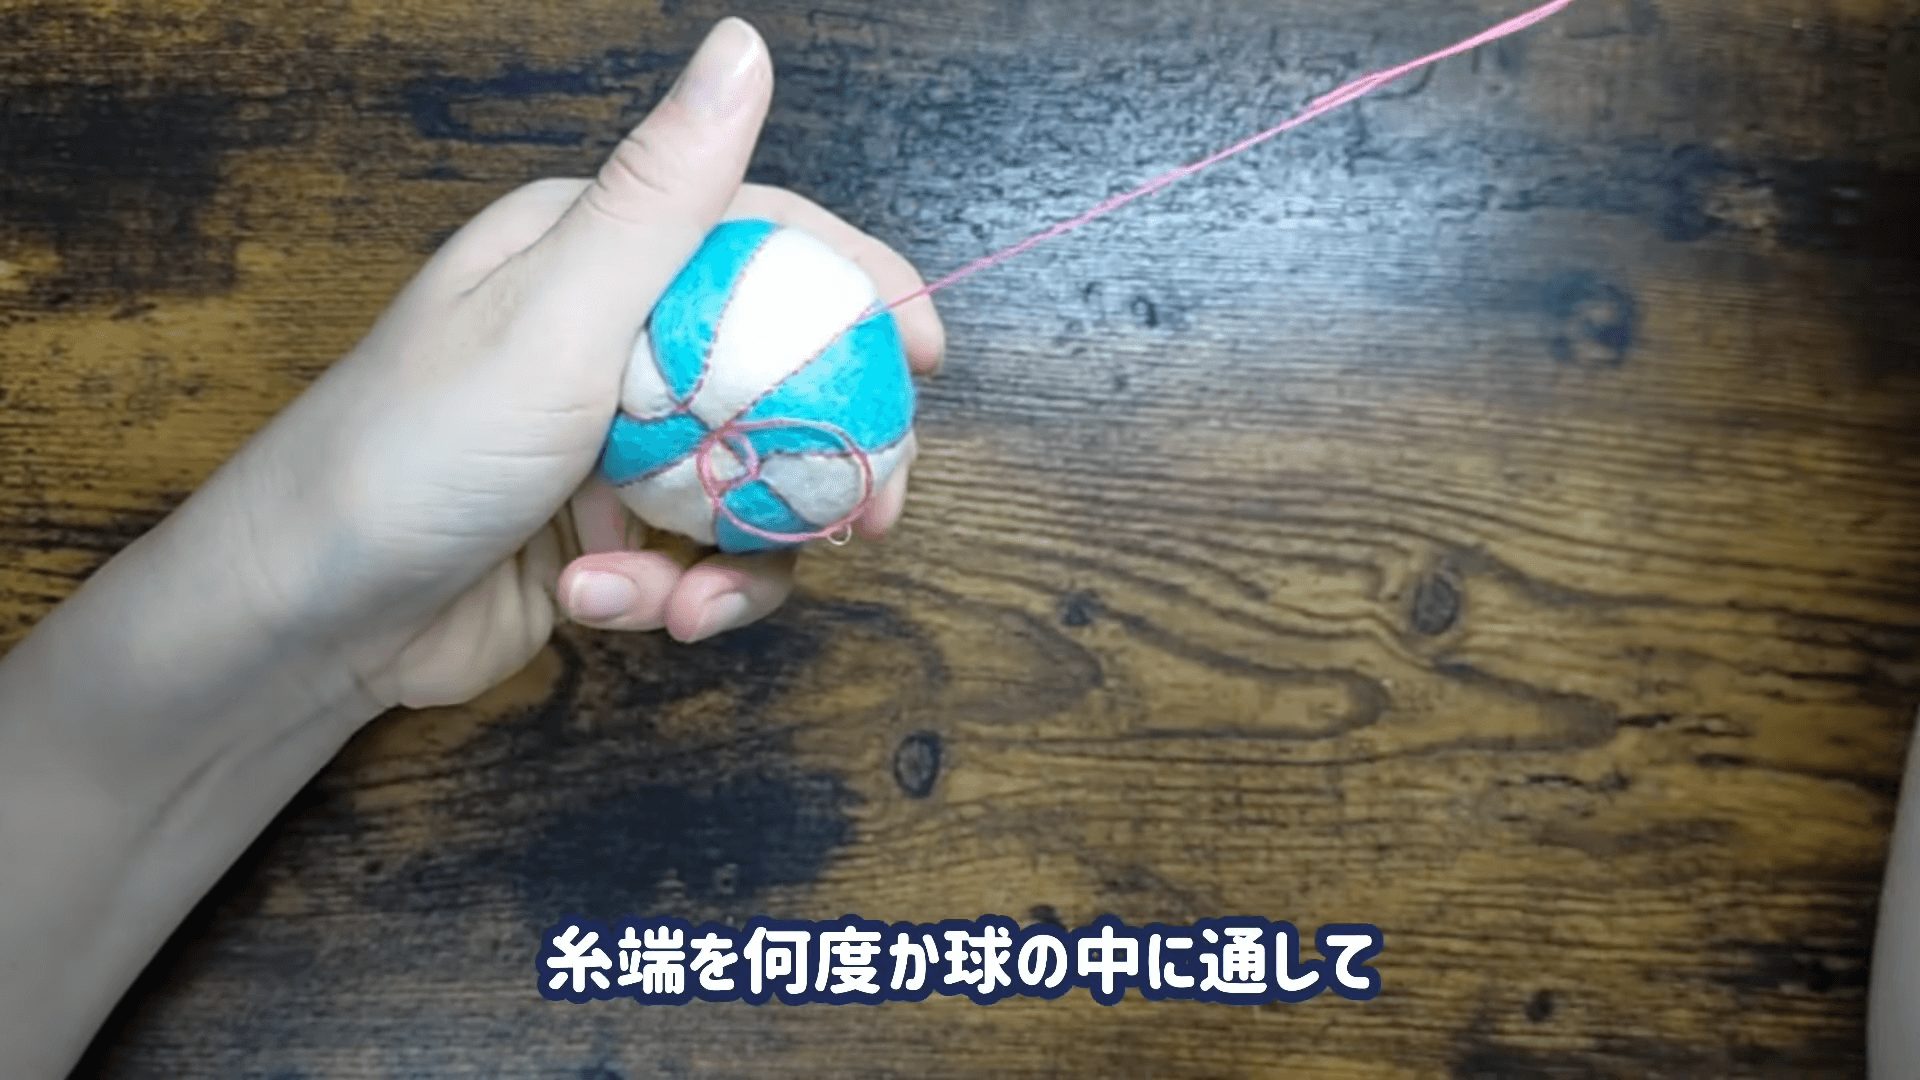 ラインを全て縫い終えたら、糸端を何度か球体の中に通す。